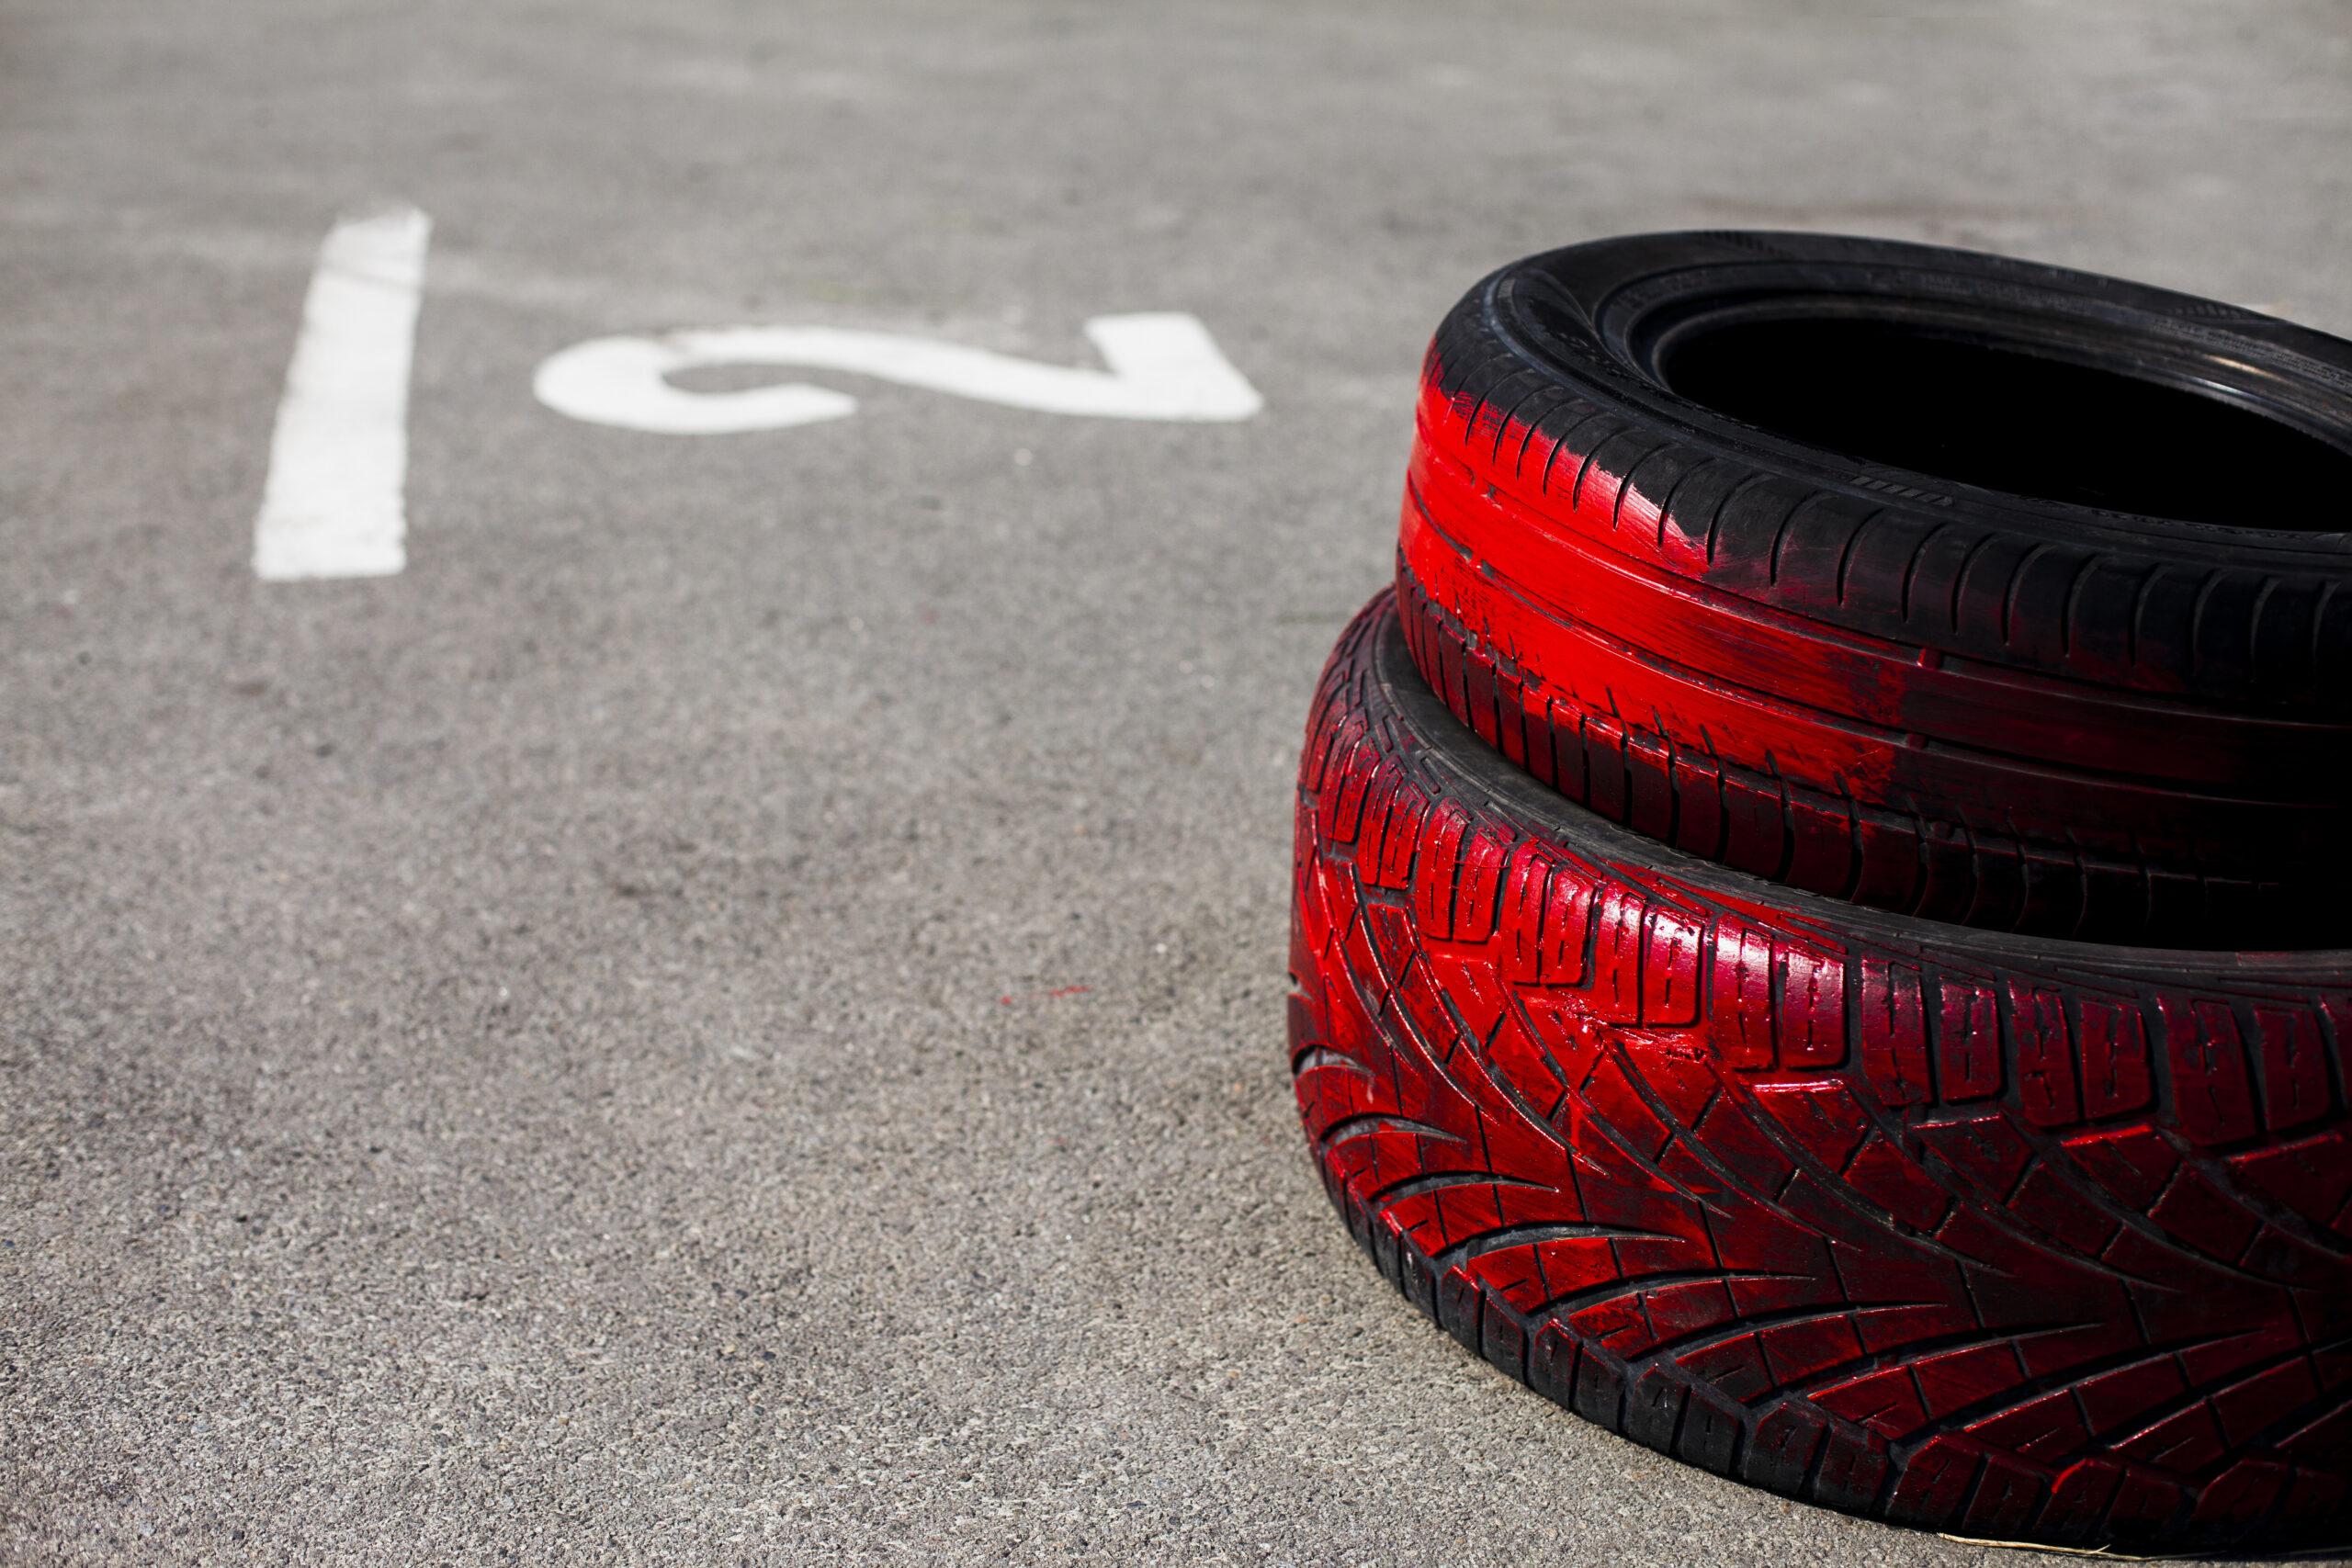 Pneu sem ar: tudo que você precisa saber sobre os pneus que não furam